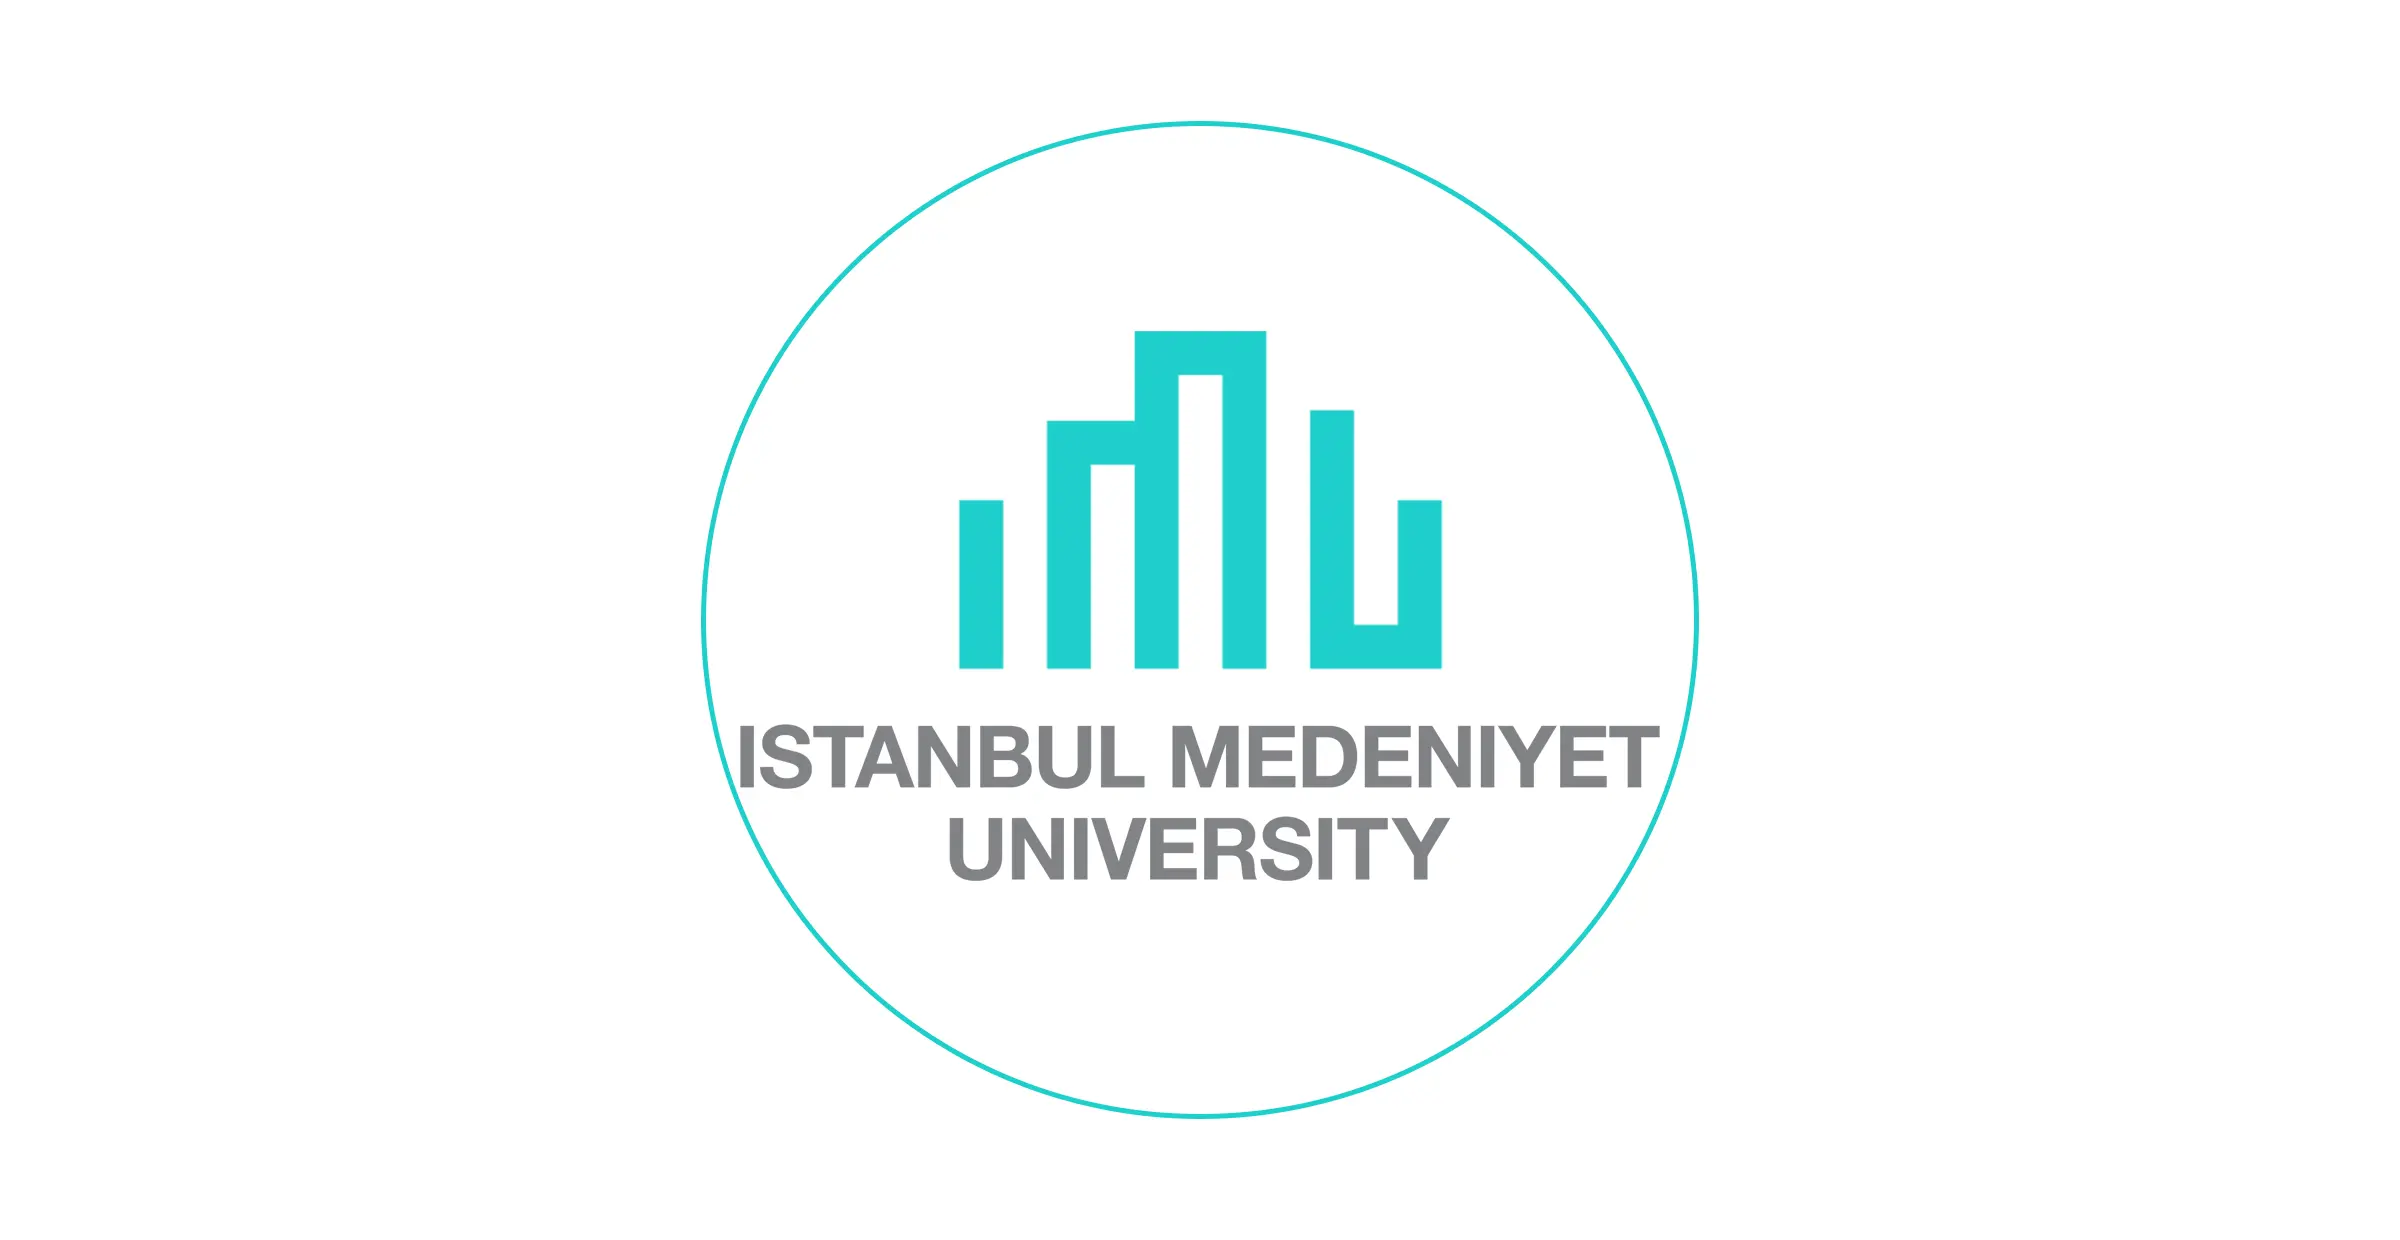 تأسست جامعة اسطنبول مدنيات عام 2010 في إسطنبول ، وهي جامعة شابة تمكنت من أن تصبح واحدة من الجامعات المفضلة في تركيا في وقت قصير.